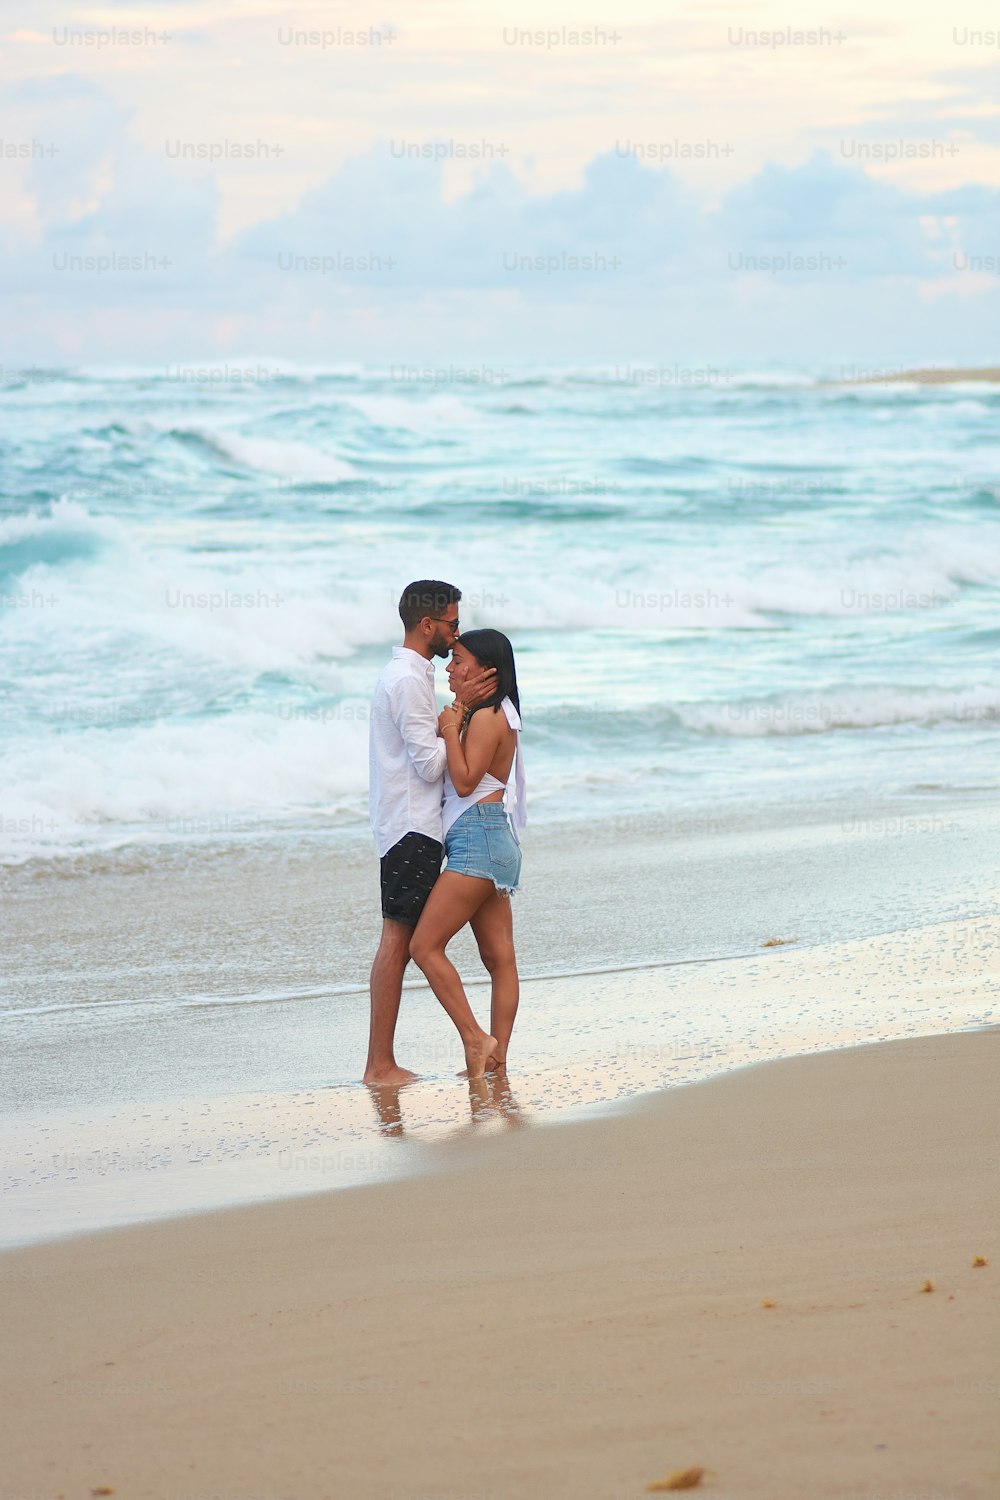 Un homme et une femme debout sur une plage au bord de l’océan